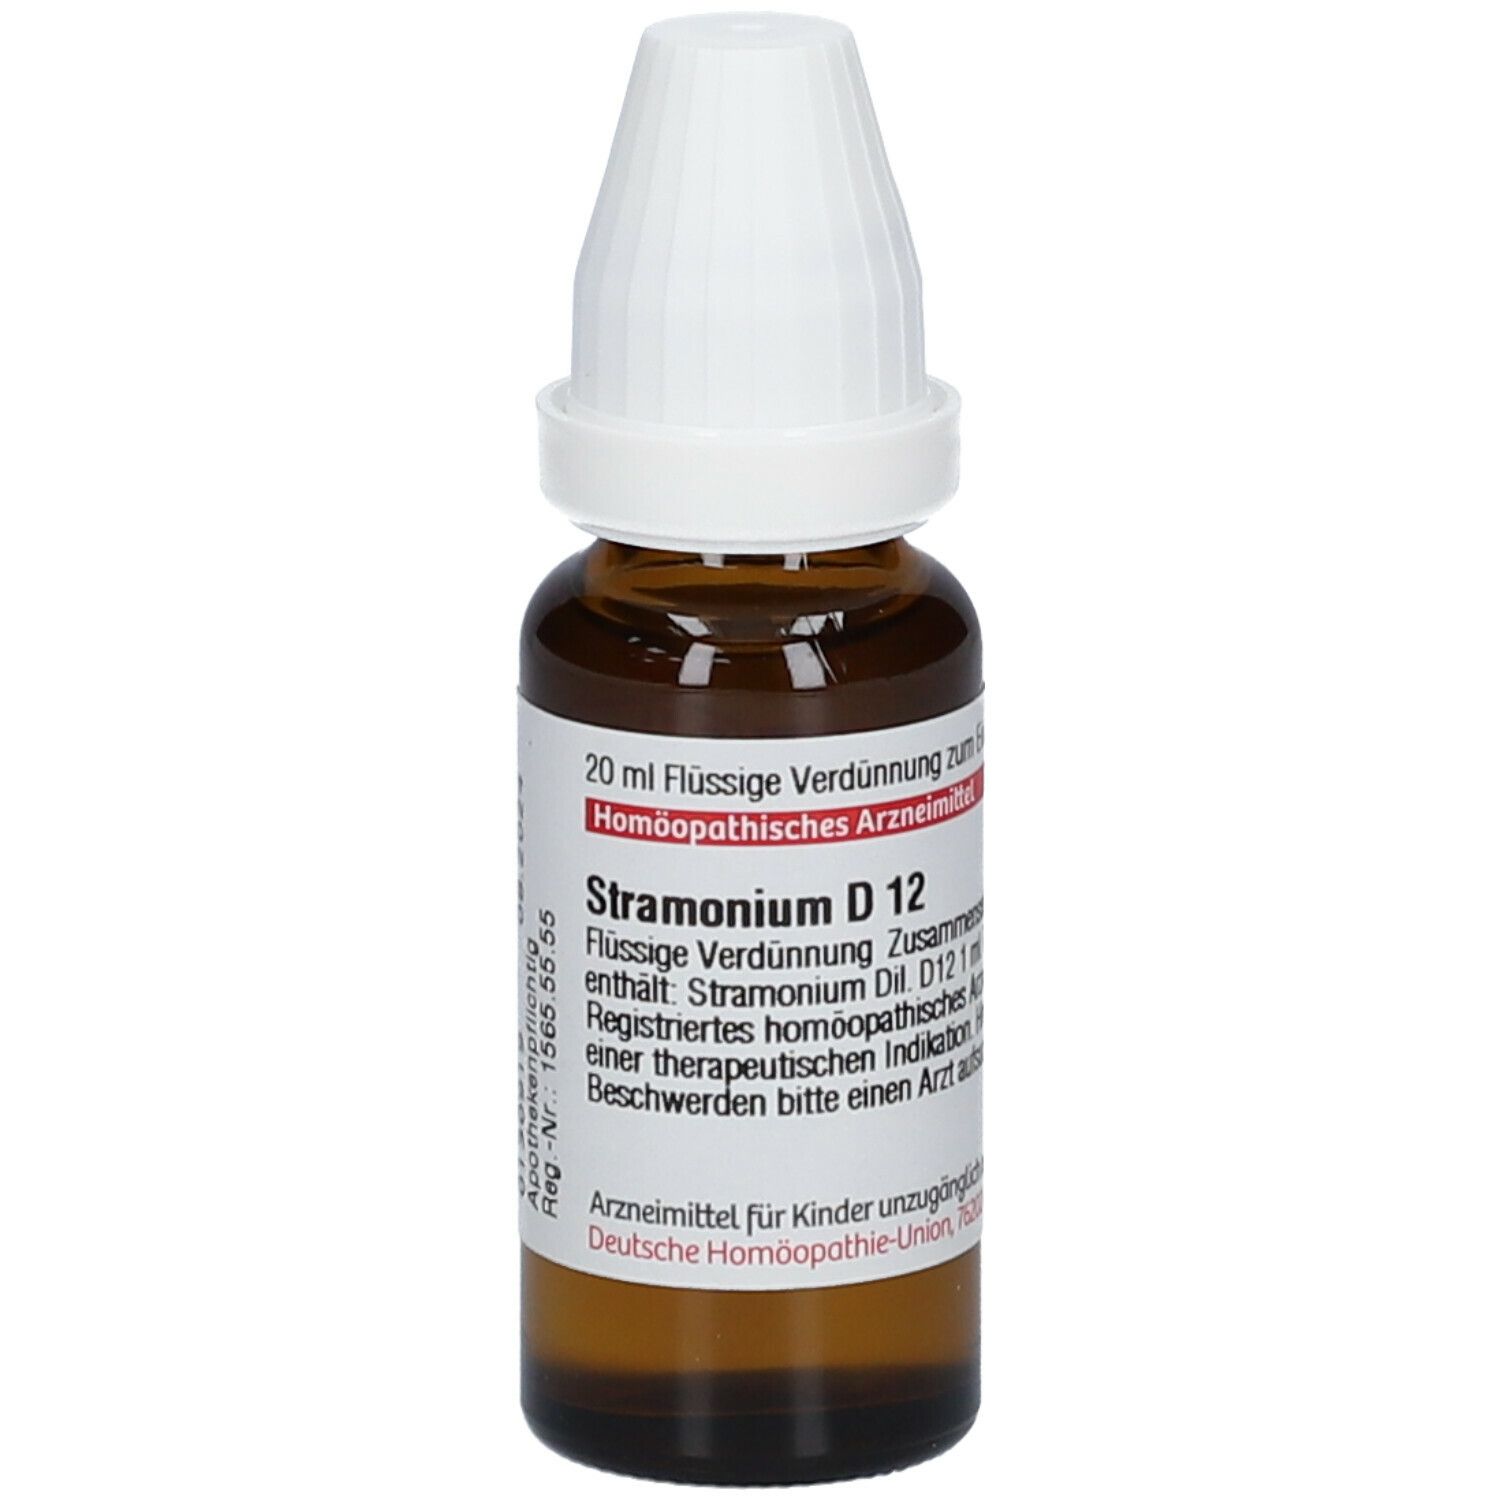 DHU Stramonium D12